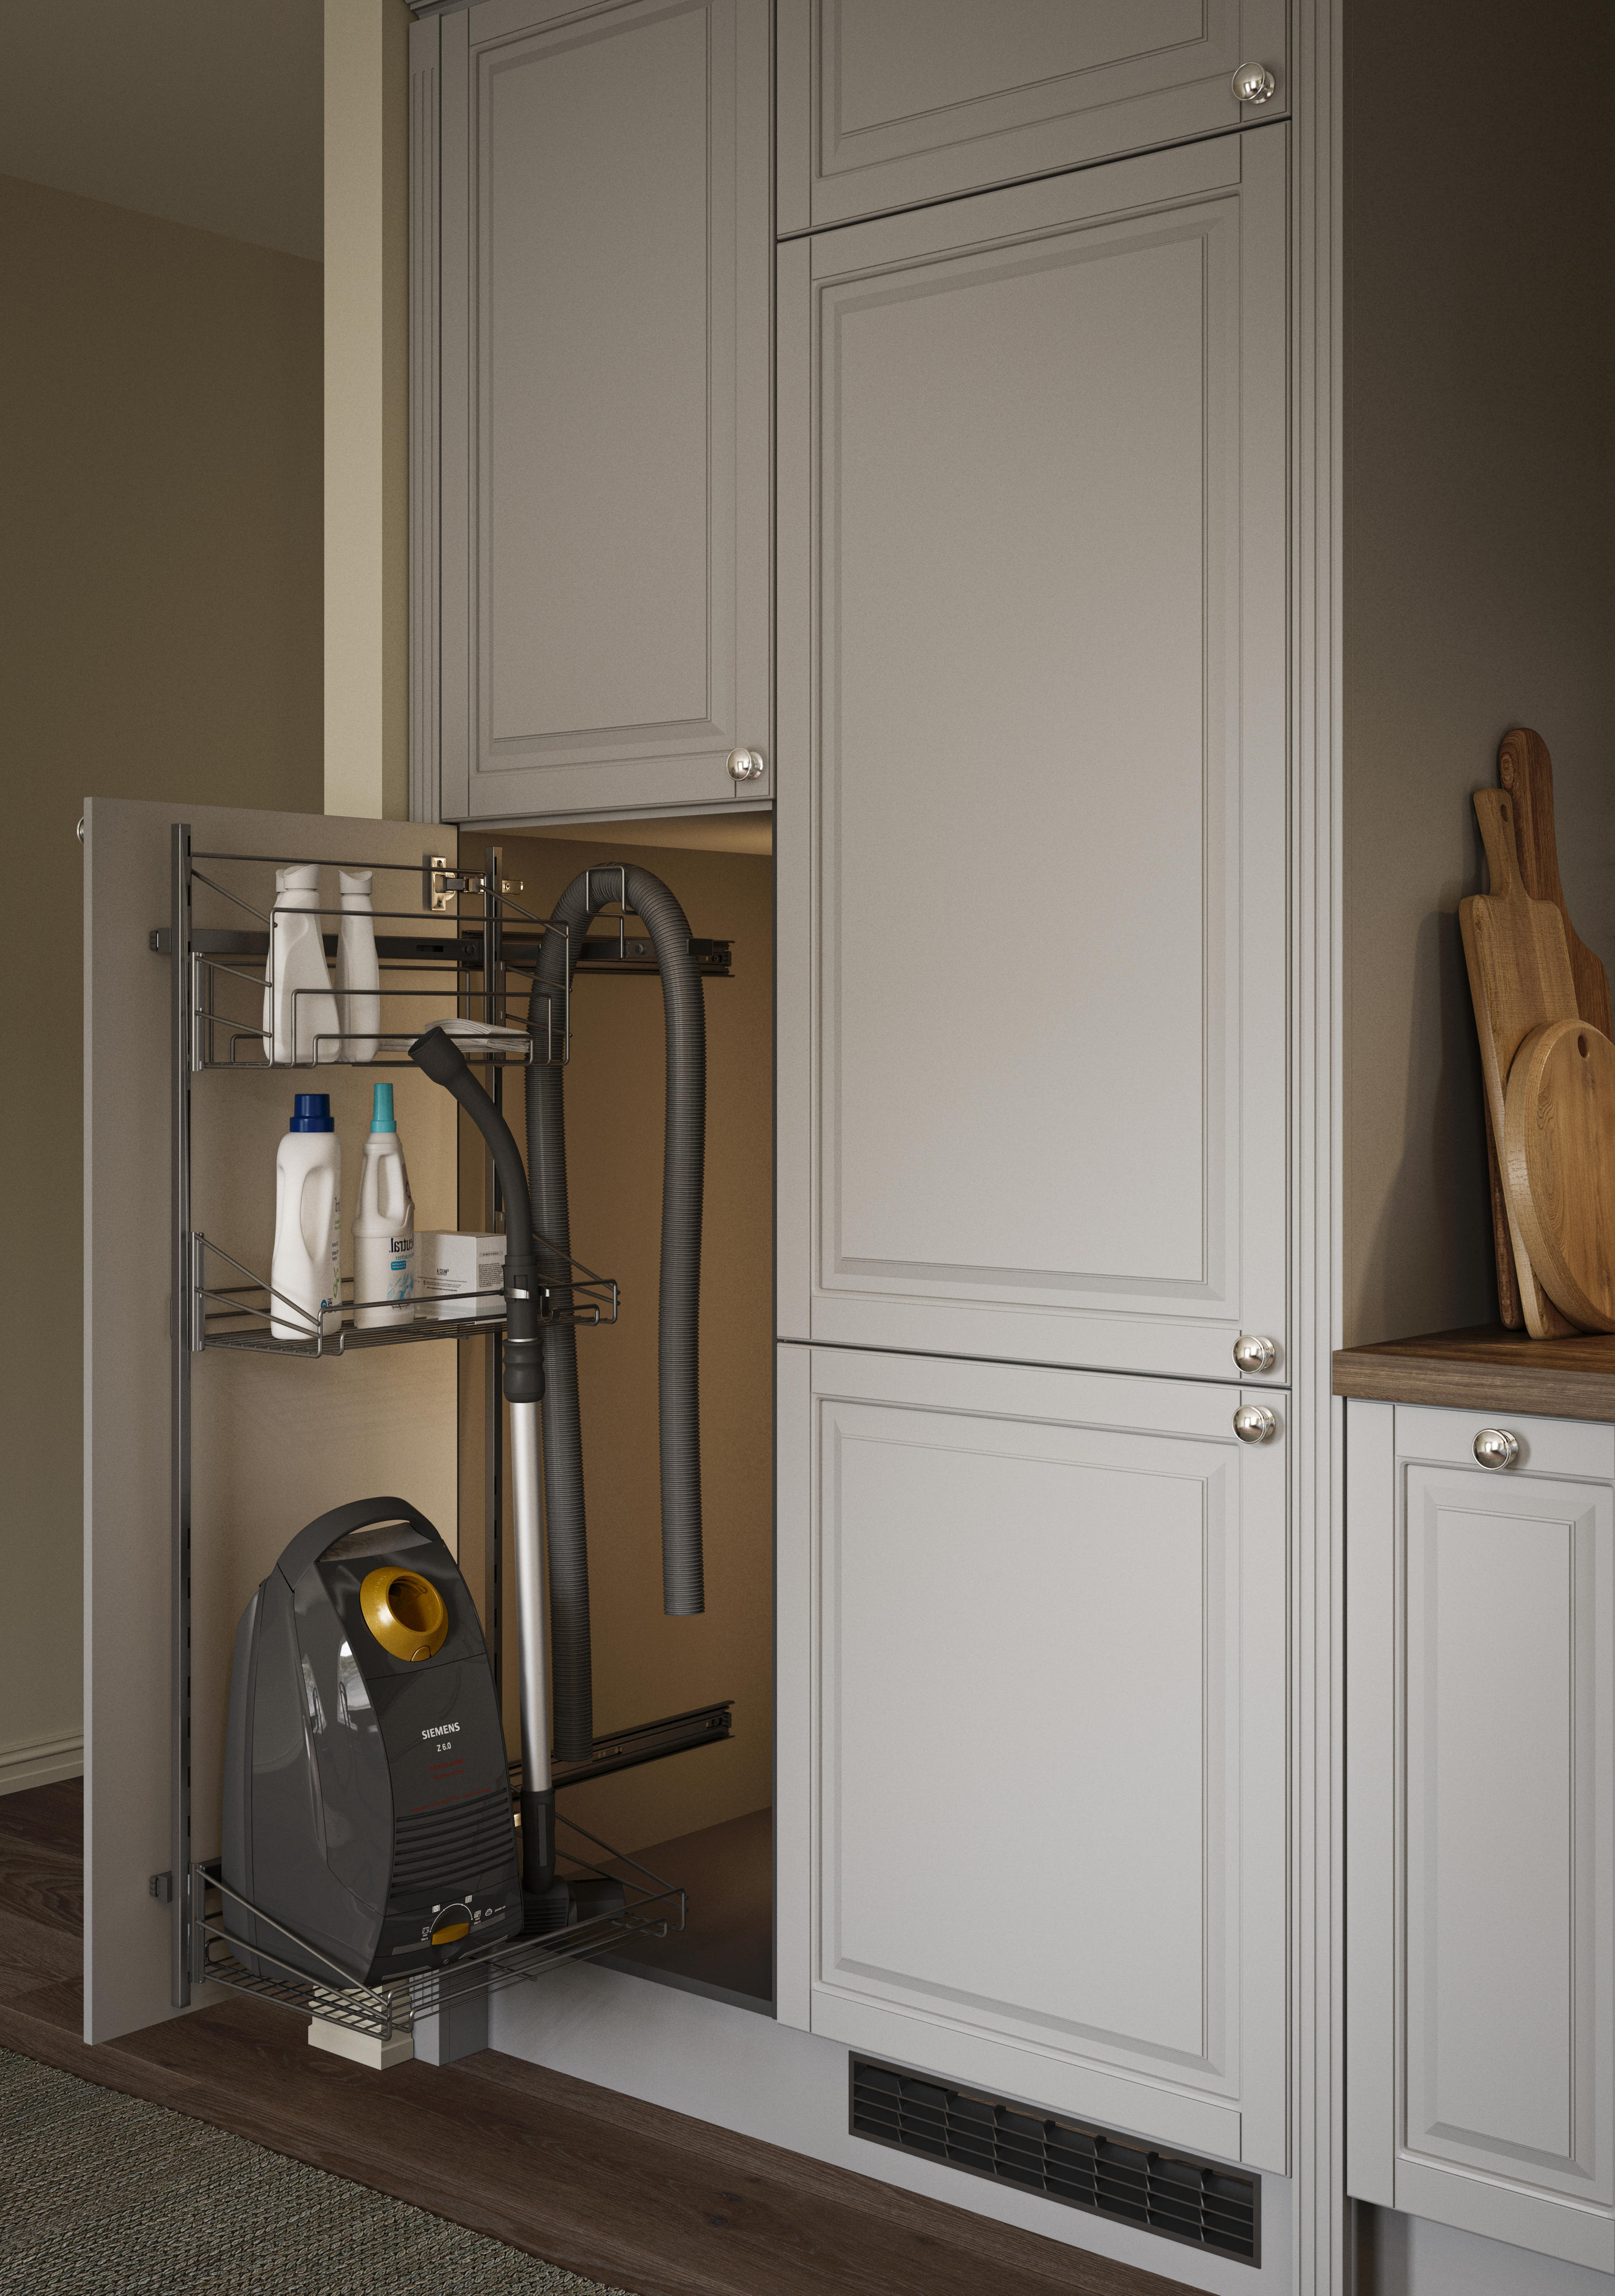 Heritage Light Grey -keittiön ulosvedettävä siivoustarvikkeiden säilytysratkaisu, jossa säilytetään pesuaineita sekä pölynimuria